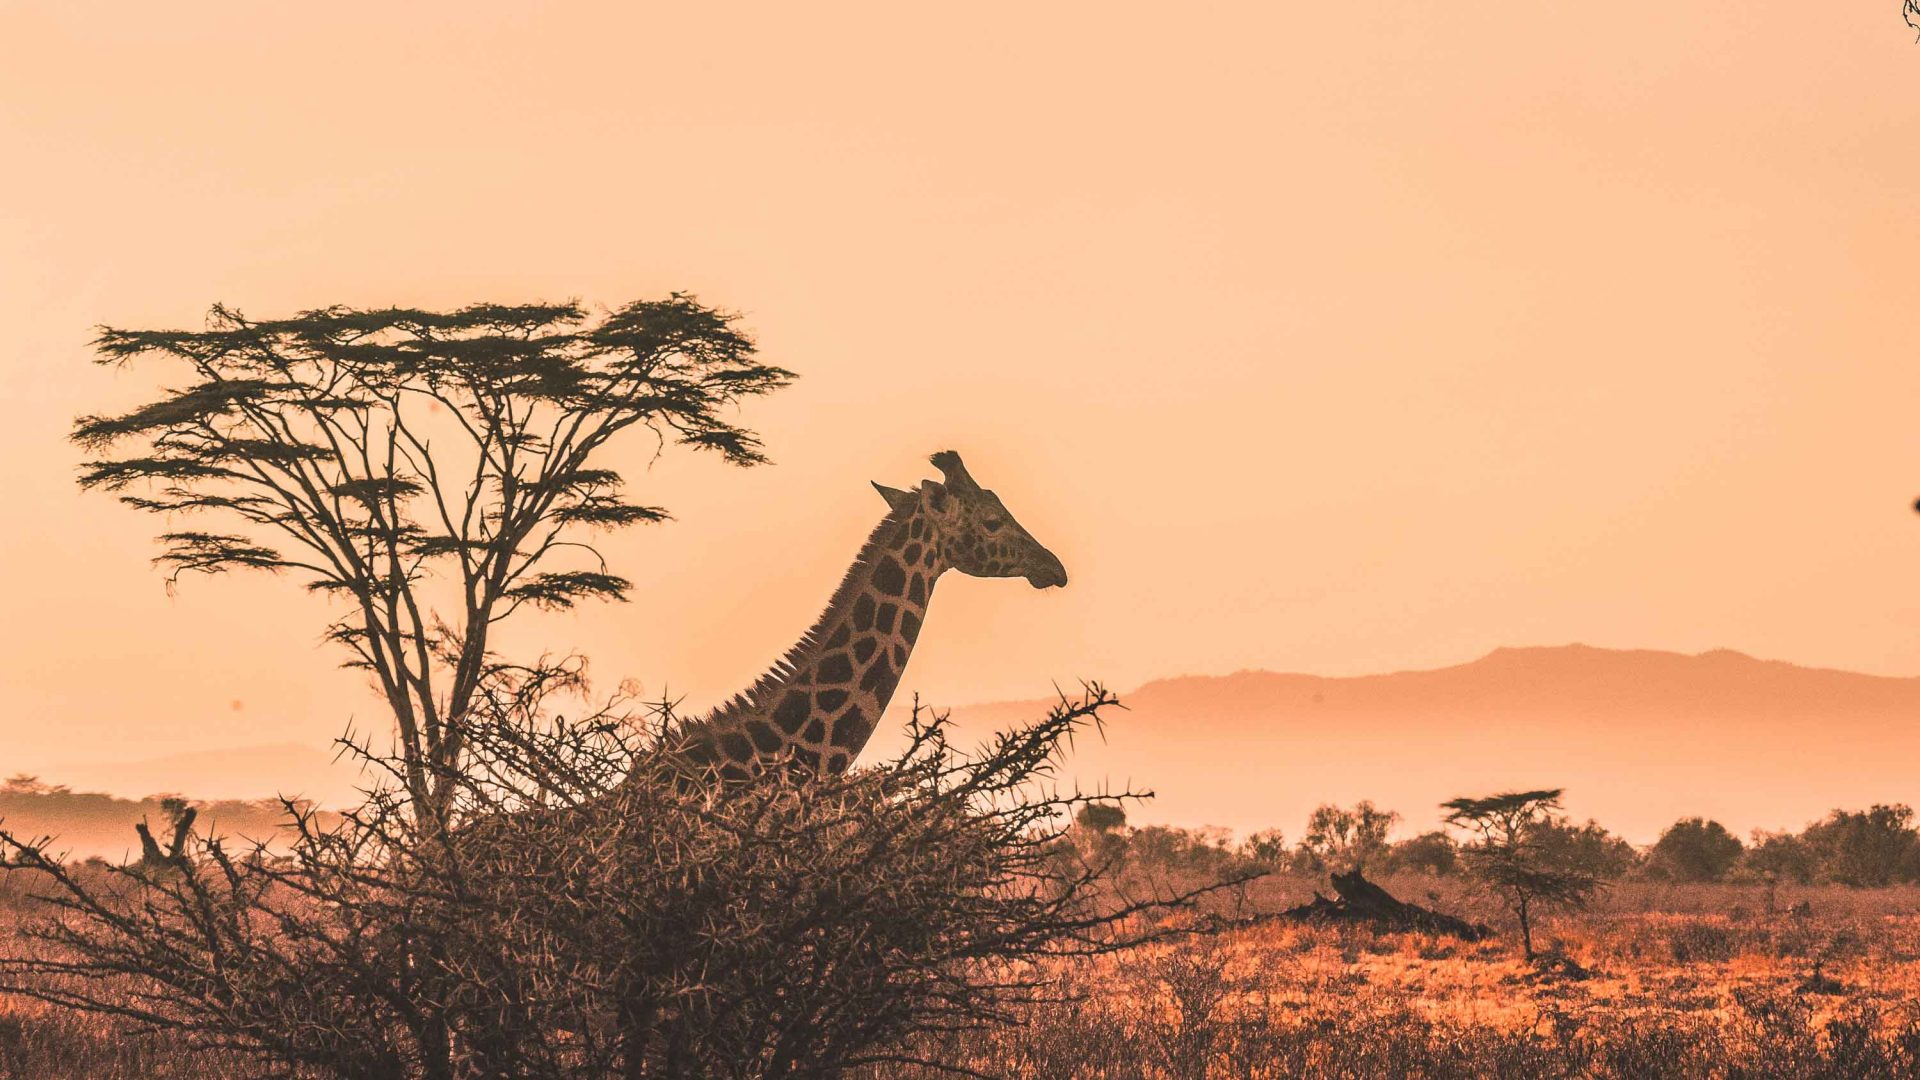 A giraffe seen through the trees at sunset.